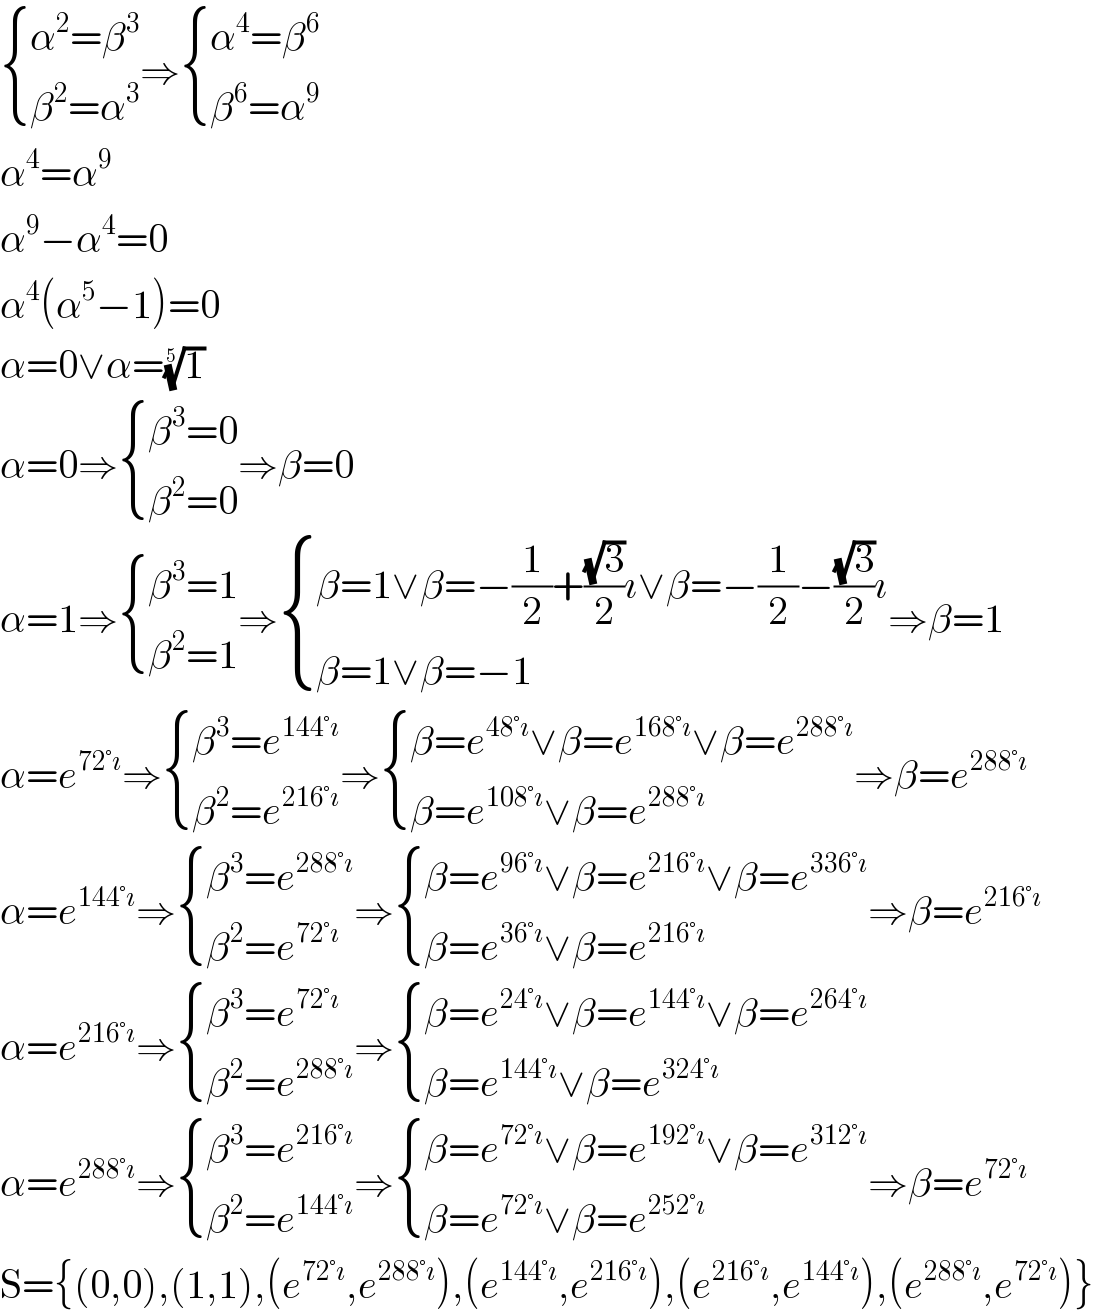  { ((α^2 =β^3 )),((β^2 =α^3 )) :}⇒ { ((α^4 =β^6 )),((β^6 =α^9 )) :}  α^4 =α^9   α^9 −α^4 =0  α^4 (α^5 −1)=0  α=0∨α=(1)^(1/5)   α=0⇒ { ((β^3 =0)),((β^2 =0)) :}⇒β=0  α=1⇒ { ((β^3 =1)),((β^2 =1)) :}⇒ { ((β=1∨β=−(1/2)+((√3)/2)ı∨β=−(1/2)−((√3)/2)ı)),((β=1∨β=−1)) :}⇒β=1  α=e^(72°ı) ⇒ { ((β^3 =e^(144°ı) )),((β^2 =e^(216°ı) )) :}⇒ { ((β=e^(48°ı) ∨β=e^(168°ı) ∨β=e^(288°ı) )),((β=e^(108°ı) ∨β=e^(288°ı) )) :}⇒β=e^(288°ı)   α=e^(144°ı) ⇒ { ((β^3 =e^(288°ı) )),((β^2 =e^(72°ı) )) :}⇒ { ((β=e^(96°ı) ∨β=e^(216°ı) ∨β=e^(336°ı) )),((β=e^(36°ı) ∨β=e^(216°ı) )) :}⇒β=e^(216°ı)   α=e^(216°ı) ⇒ { ((β^3 =e^(72°ı) )),((β^2 =e^(288°ı) )) :}⇒ { ((β=e^(24°ı) ∨β=e^(144°ı) ∨β=e^(264°ı) )),((β=e^(144°ı) ∨β=e^(324°ı) )) :}  α=e^(288°ı) ⇒ { ((β^3 =e^(216°ı) )),((β^2 =e^(144°ı) )) :}⇒ { ((β=e^(72°ı) ∨β=e^(192°ı) ∨β=e^(312°ı) )),((β=e^(72°ı) ∨β=e^(252°ı) )) :}⇒β=e^(72°ı)   S={(0,0),(1,1),(e^(72°ı) ,e^(288°ı) ),(e^(144°ı) ,e^(216°ı) ),(e^(216°ı) ,e^(144°ı) ),(e^(288°ı) ,e^(72°ı) )}  